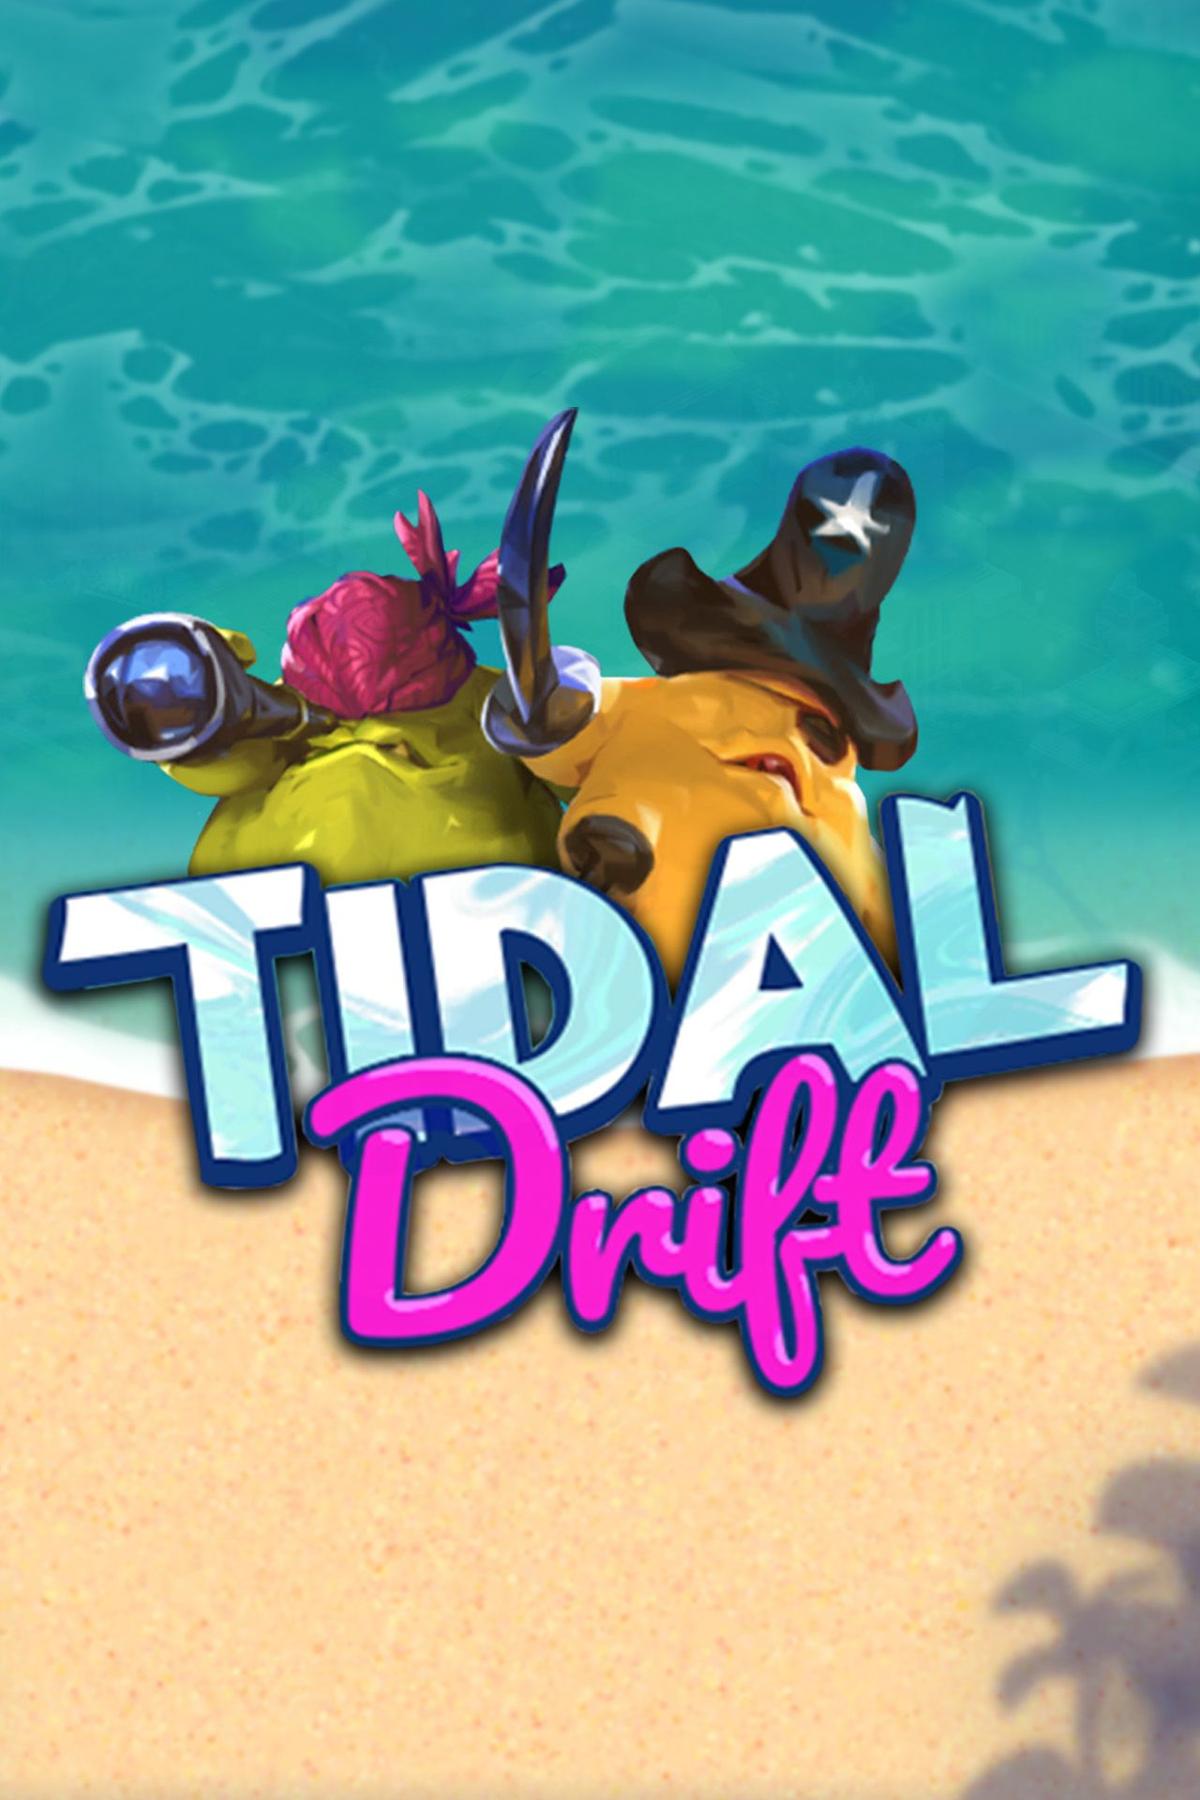 Tidal Drift